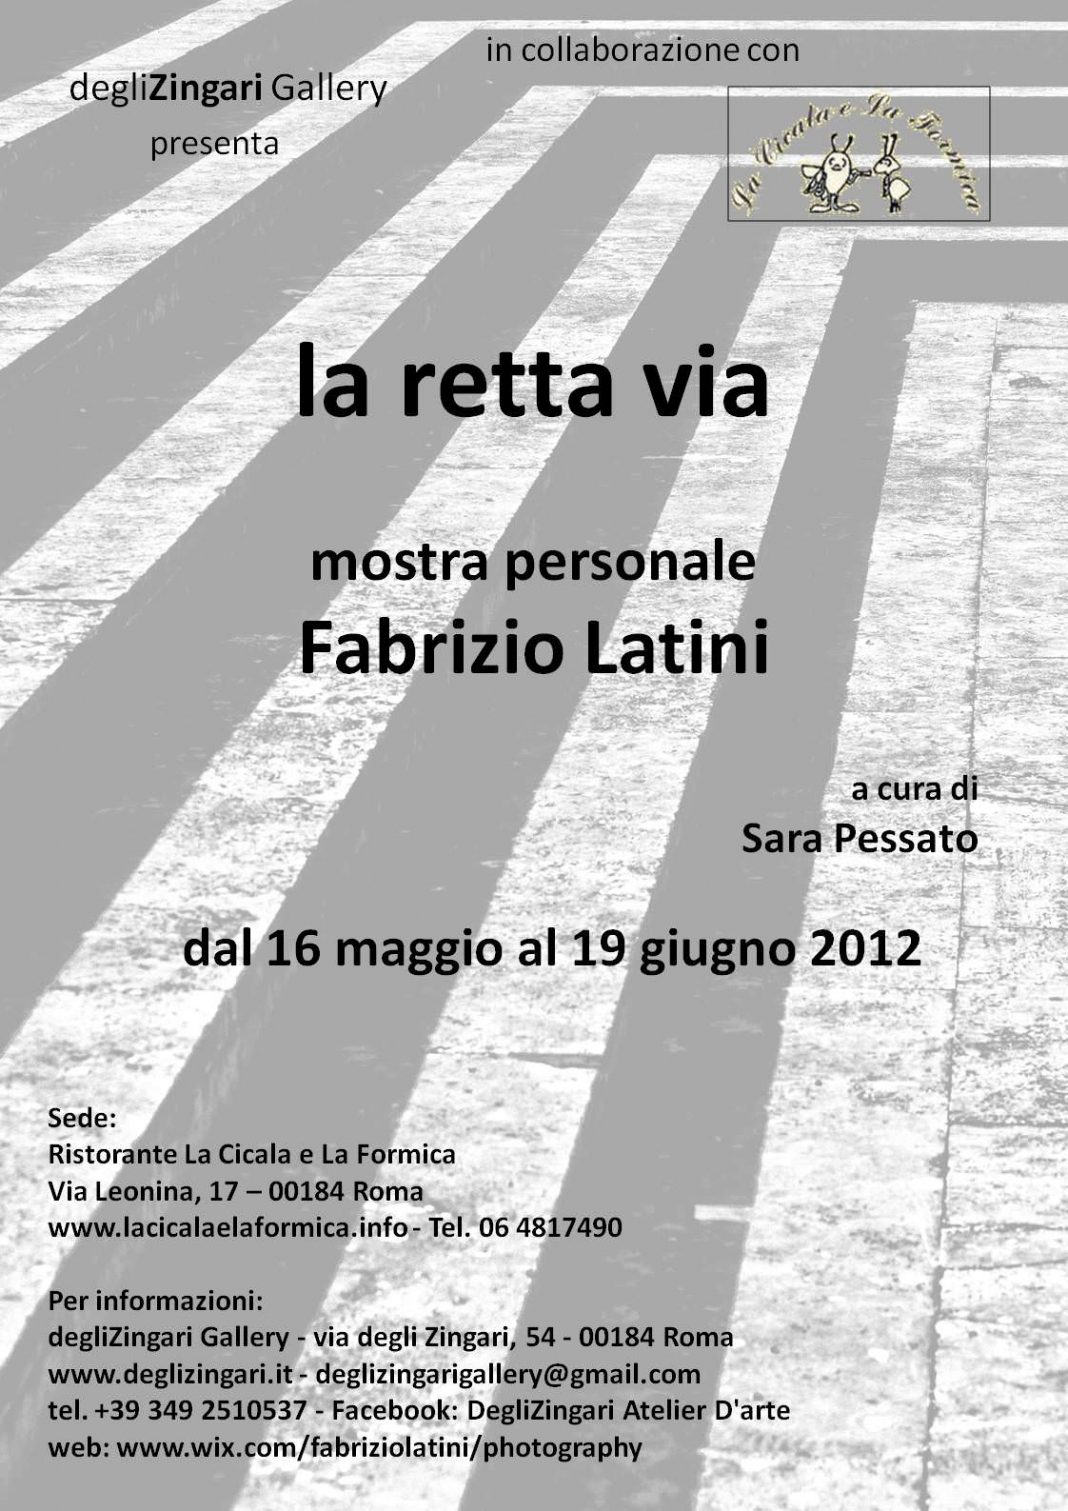 Fabrizio Latini – La retta viahttps://www.exibart.com/repository/media/eventi/2012/05/fabrizio-latini-8211-la-retta-via-1068x1511.jpg